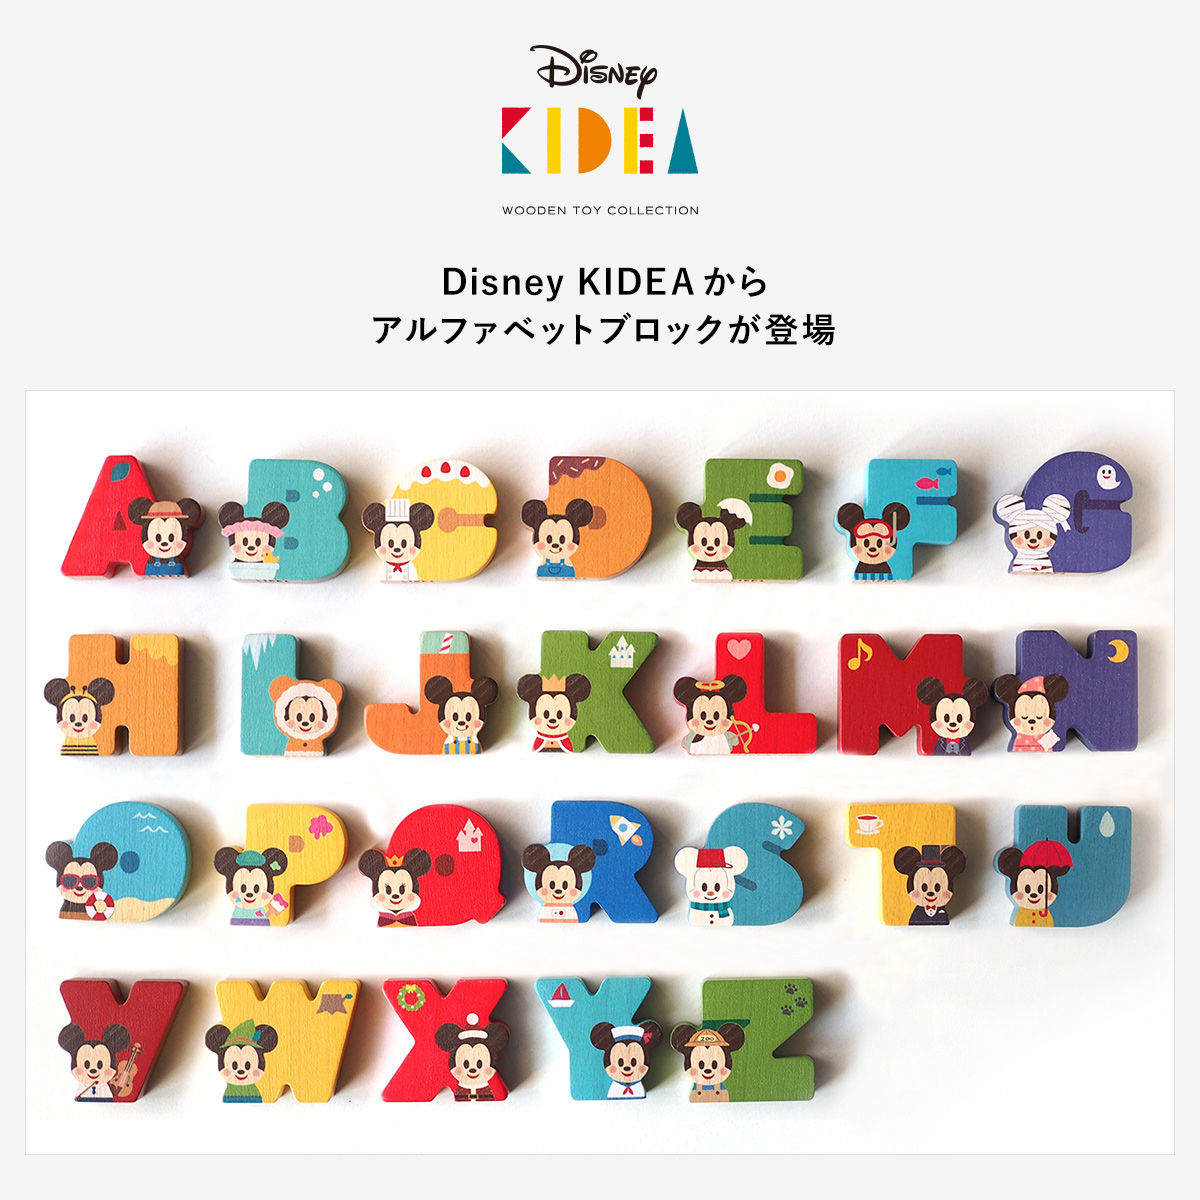 26文字セット Disney Kidea Alphabet ディズニーキャラクター 趣味 コレクション プレミアムバンダイ公式通販